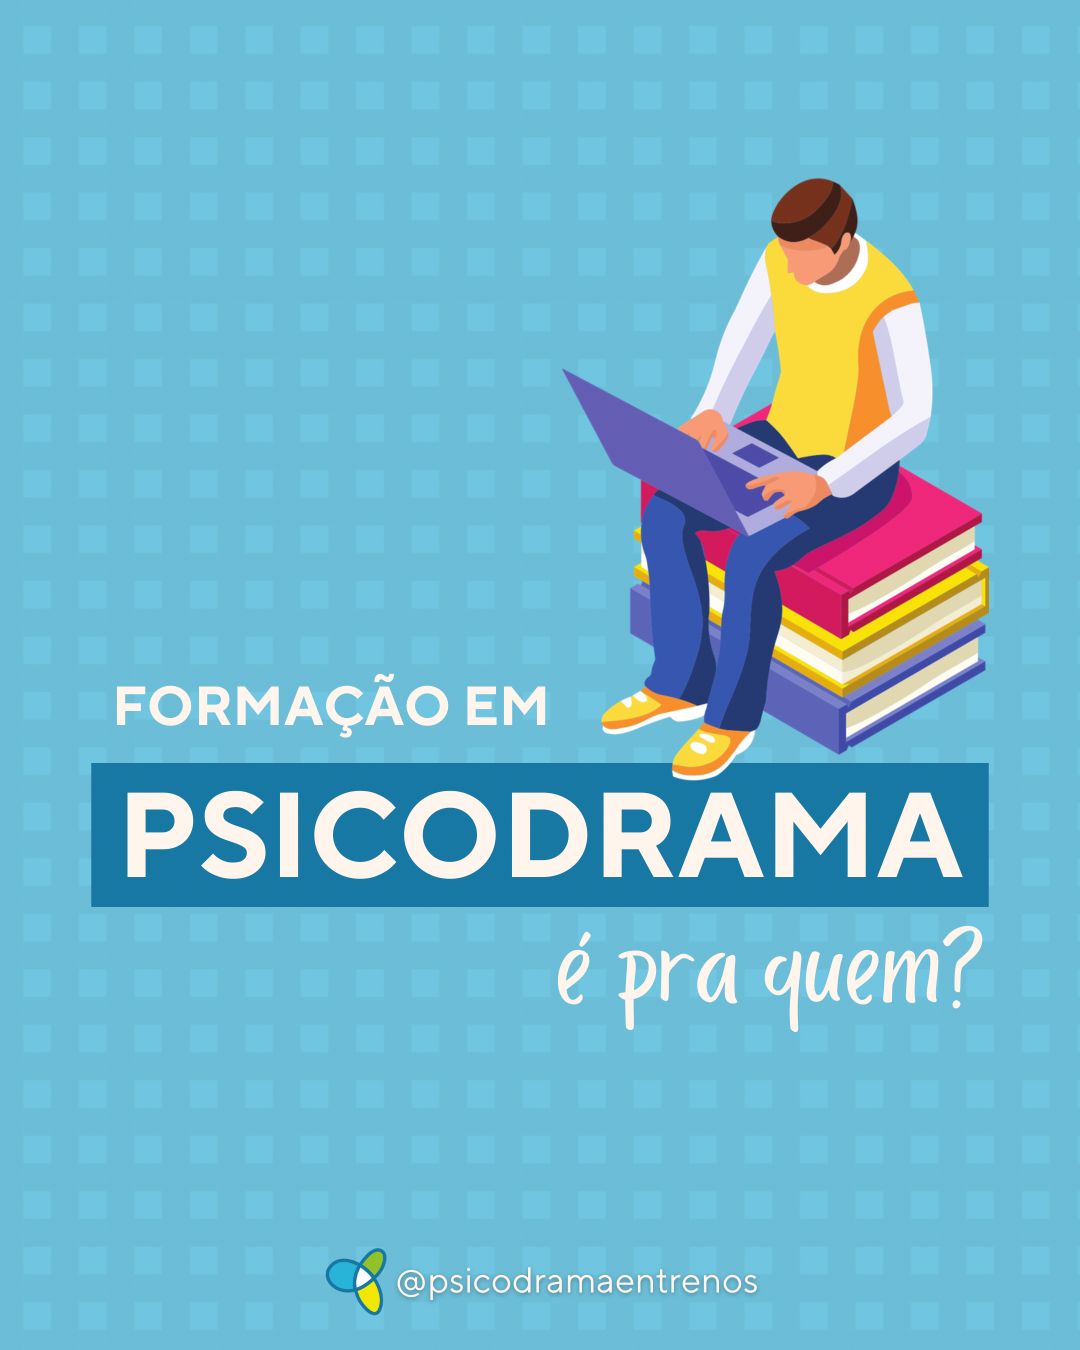 You are currently viewing Curso de Formação em Psicodrama